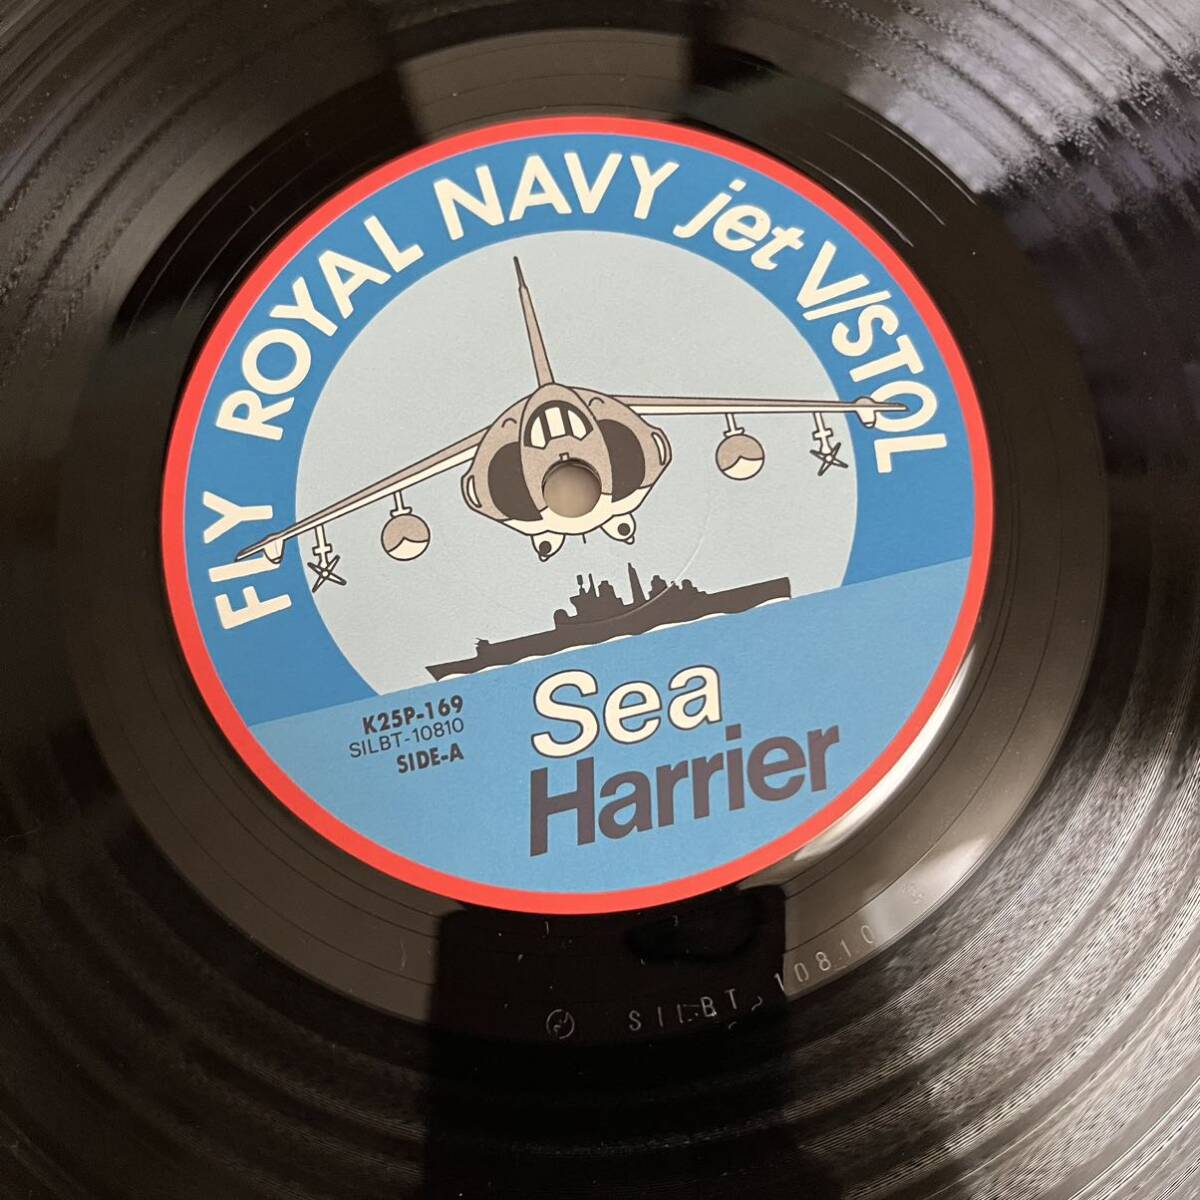 【帯付ポートレート付】ROYAL NAVY SEA HARRIER シーハリアー / LP レコード / K25P 169 / ライナー有 /_画像8